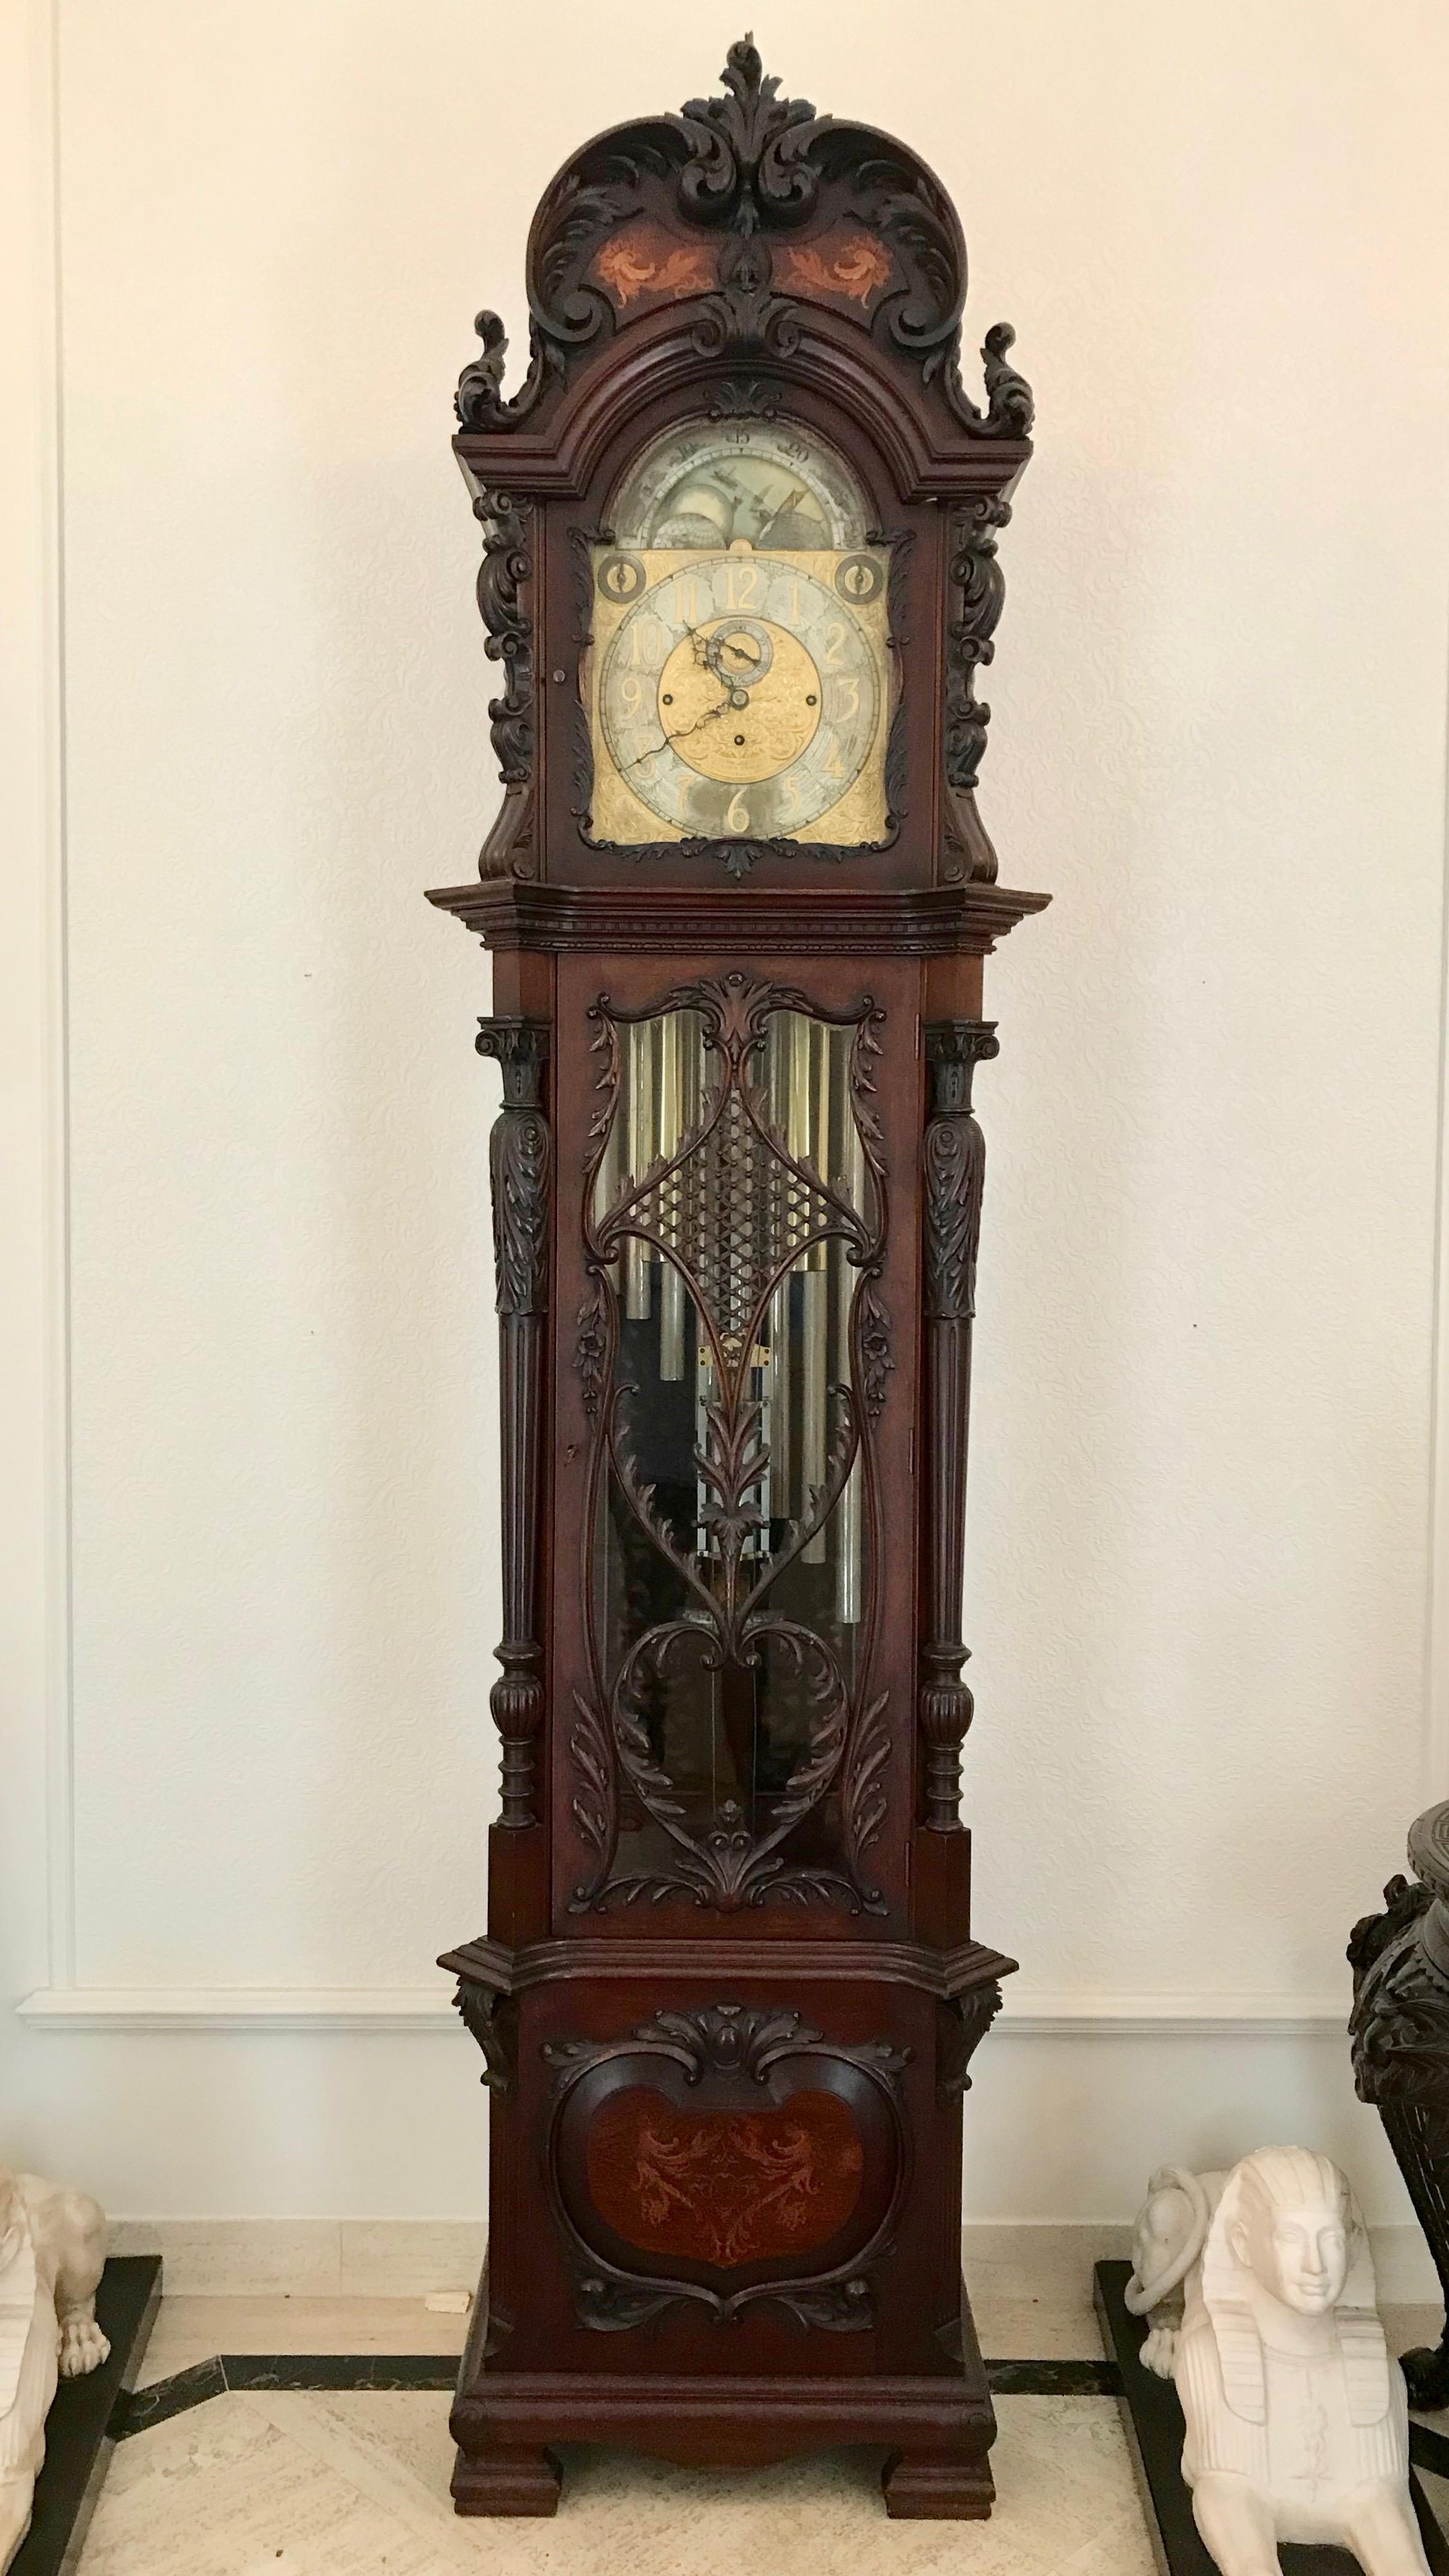 L'horloge est formée d'un boîtier élaboré et richement sculpté, qui présente des motifs élaborés.
et des incrustations exotiques sur la couronne.
Le cadran 